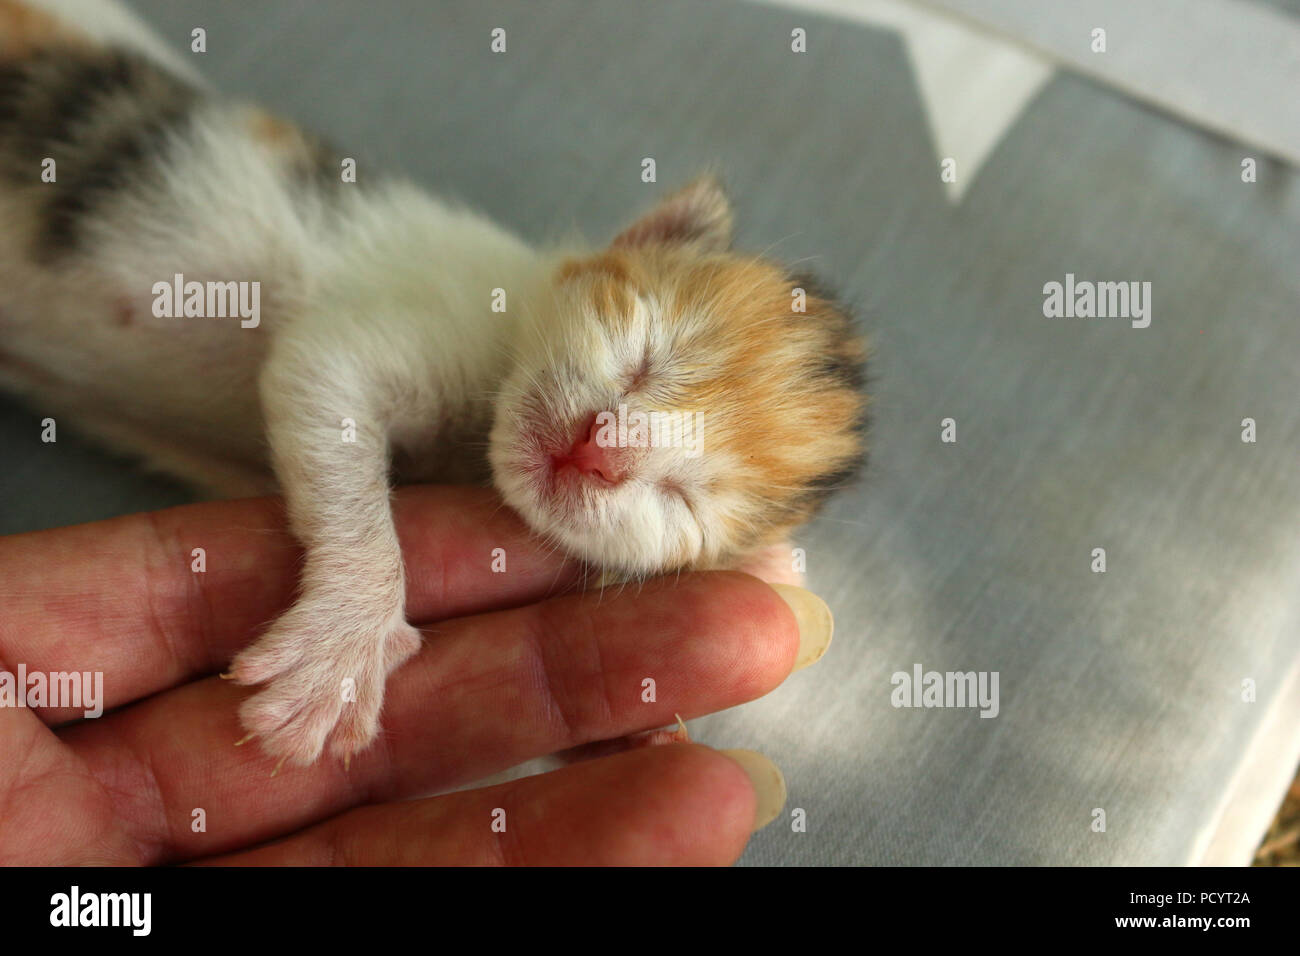 newborn kitten, 6 days old, lying on human fingers Stock Photo